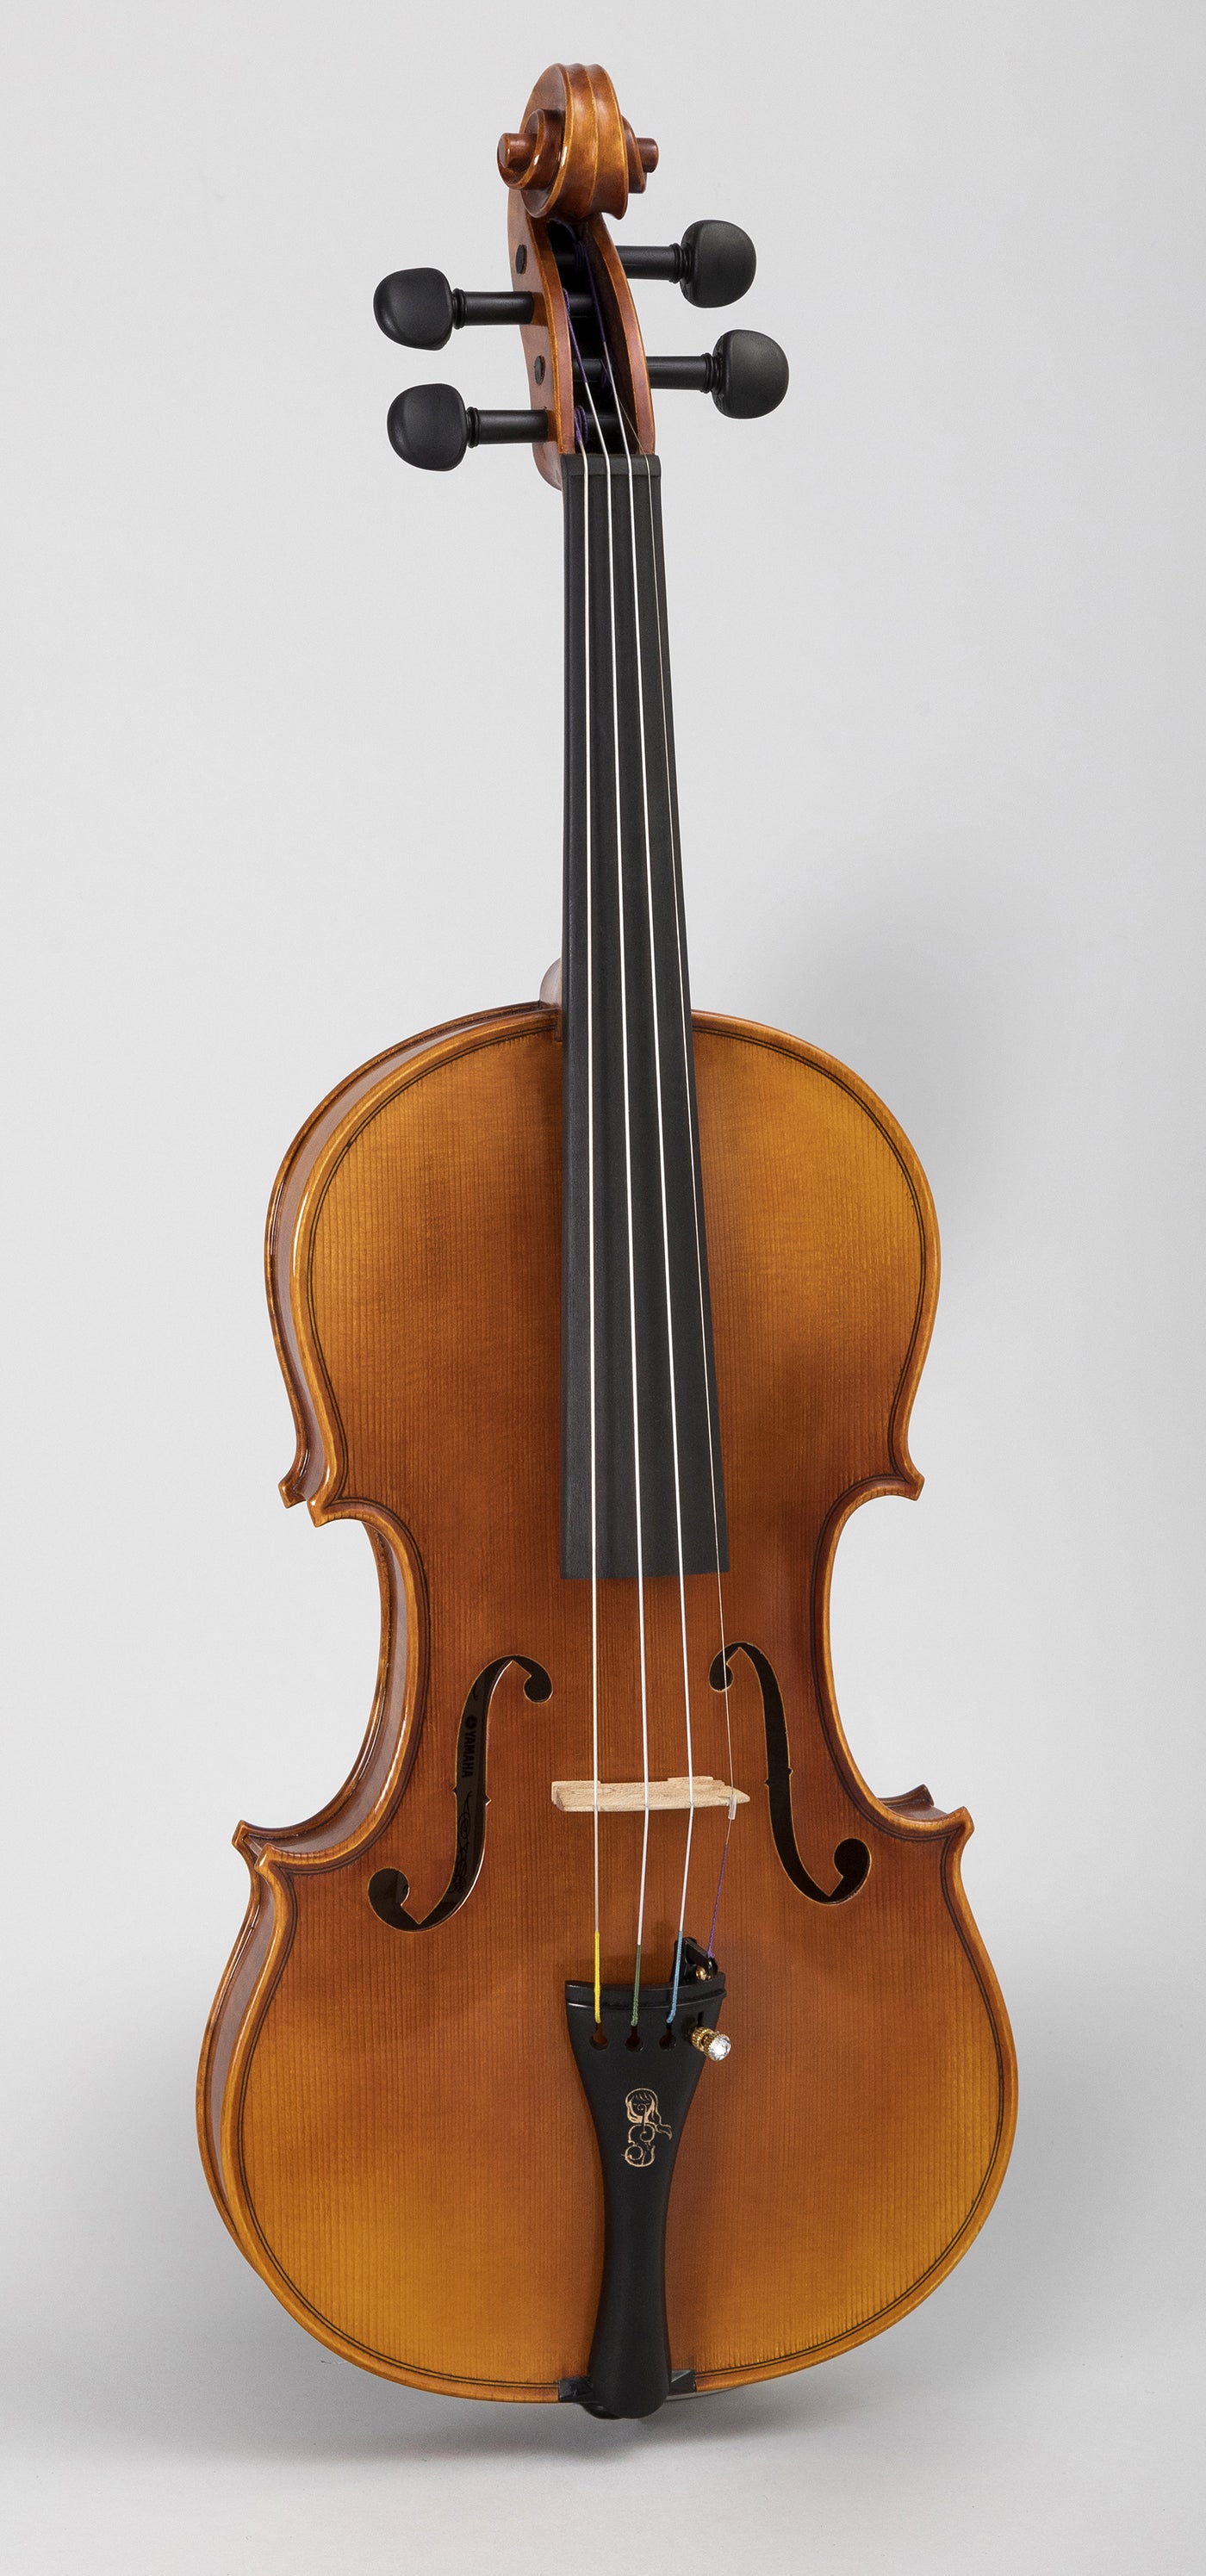 Picasso Udsøgt værksted Crystallize" Lindsey Stirling Signature Yamaha Violin